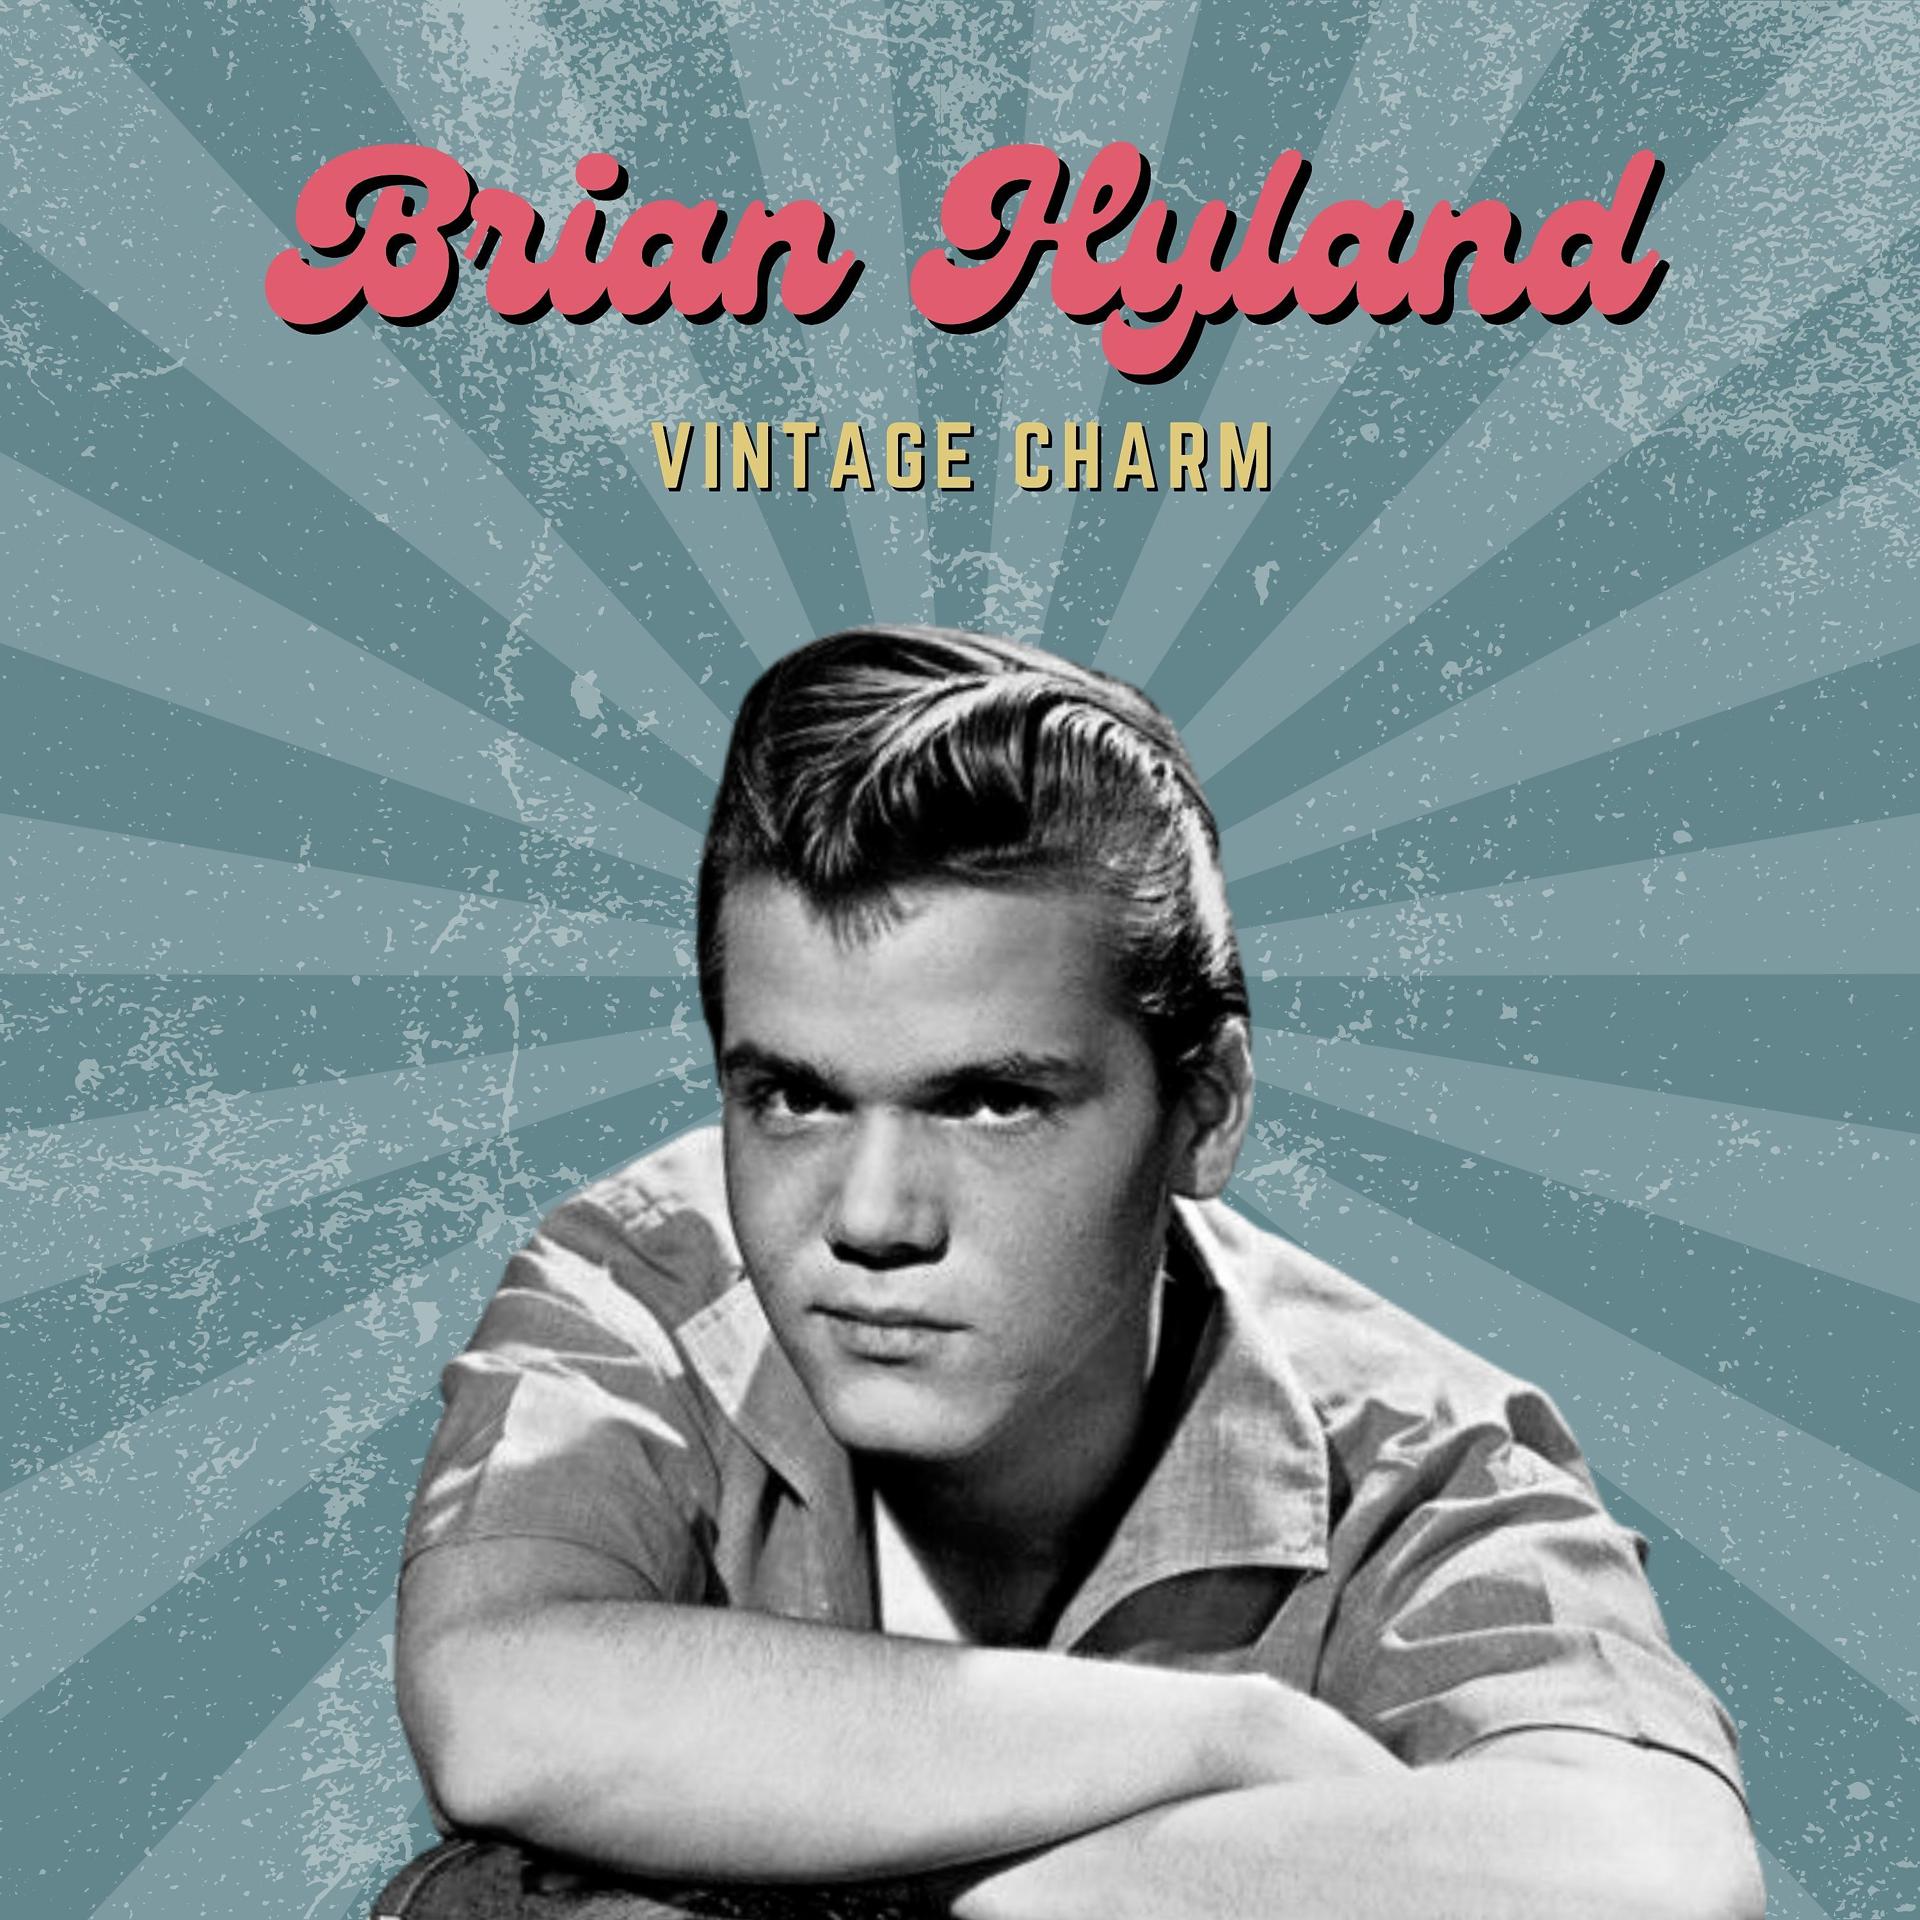 Постер альбома Brian Hyland